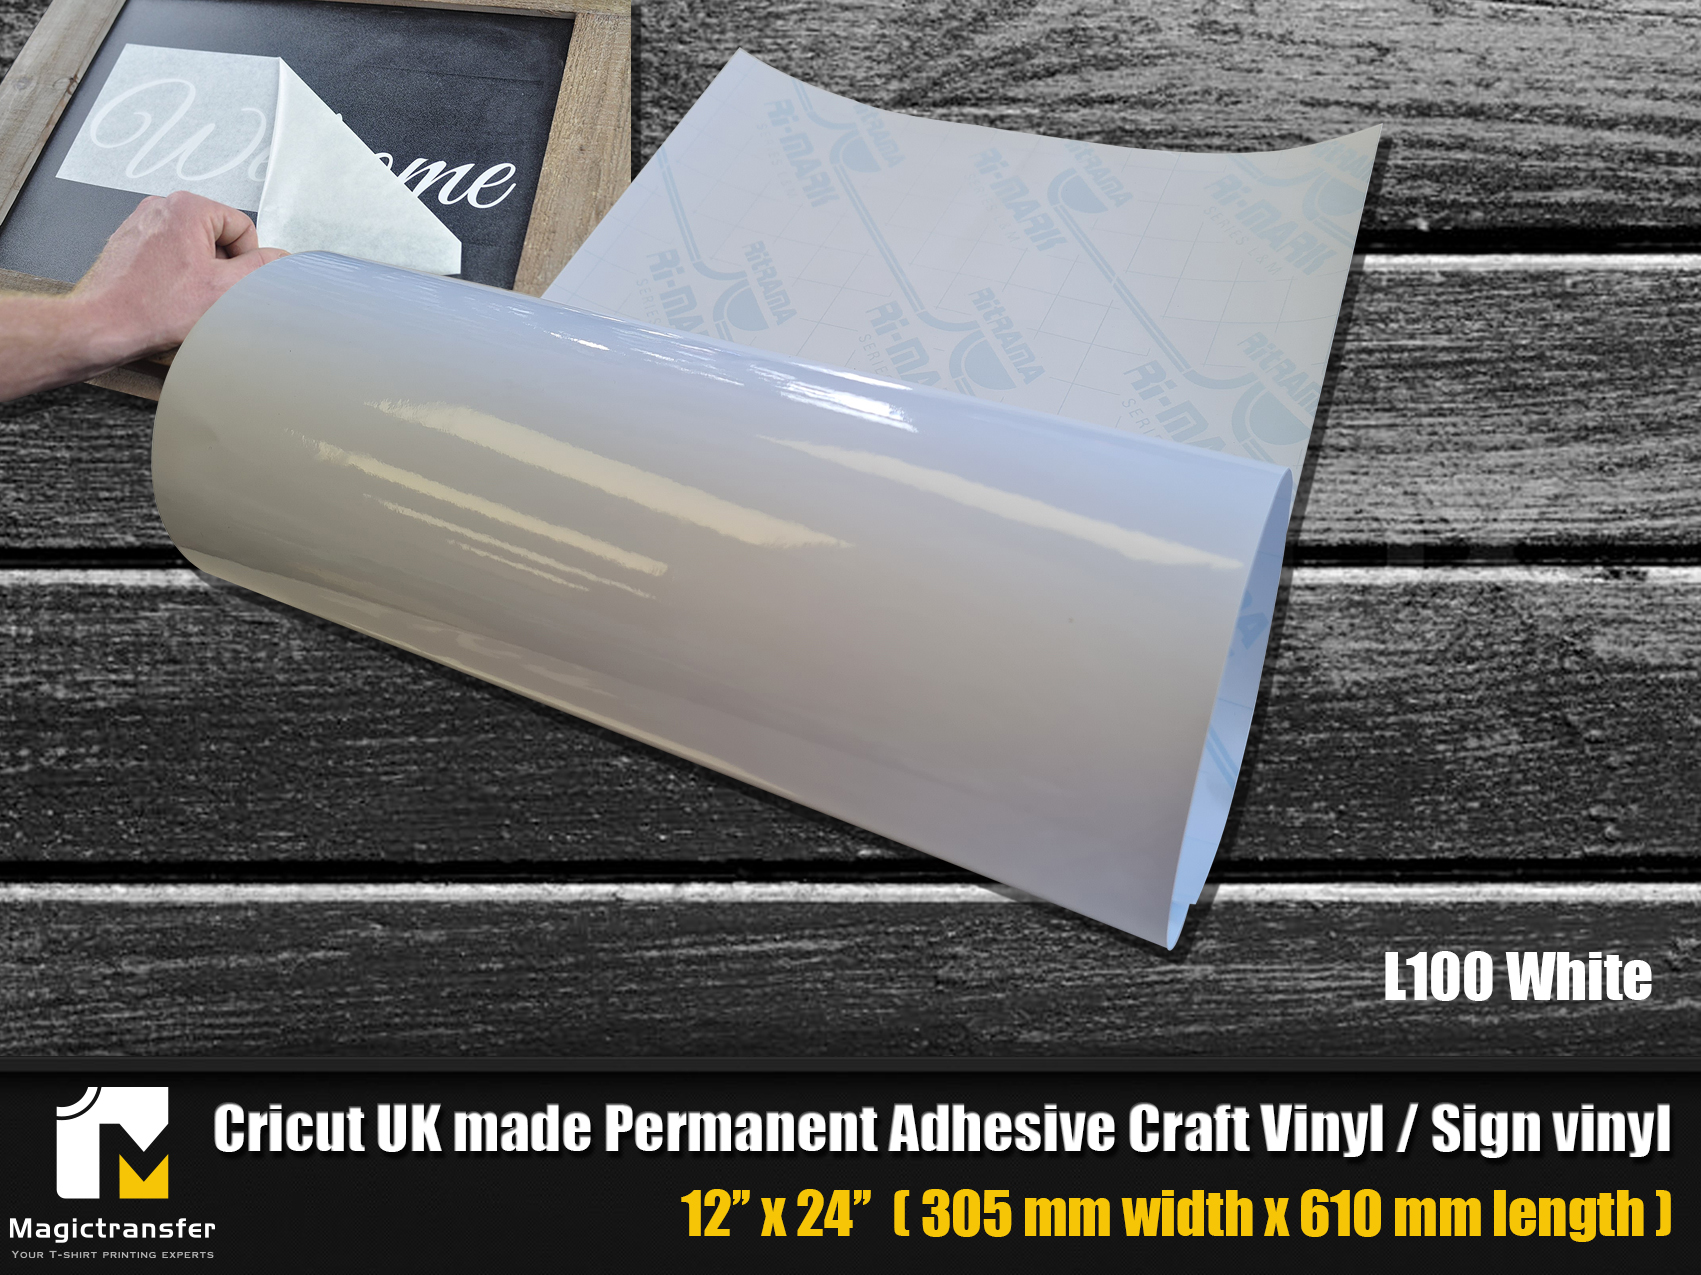 Cricut Premium Permanent Adhesive Craft Vinyl /Sign vinyl -L100